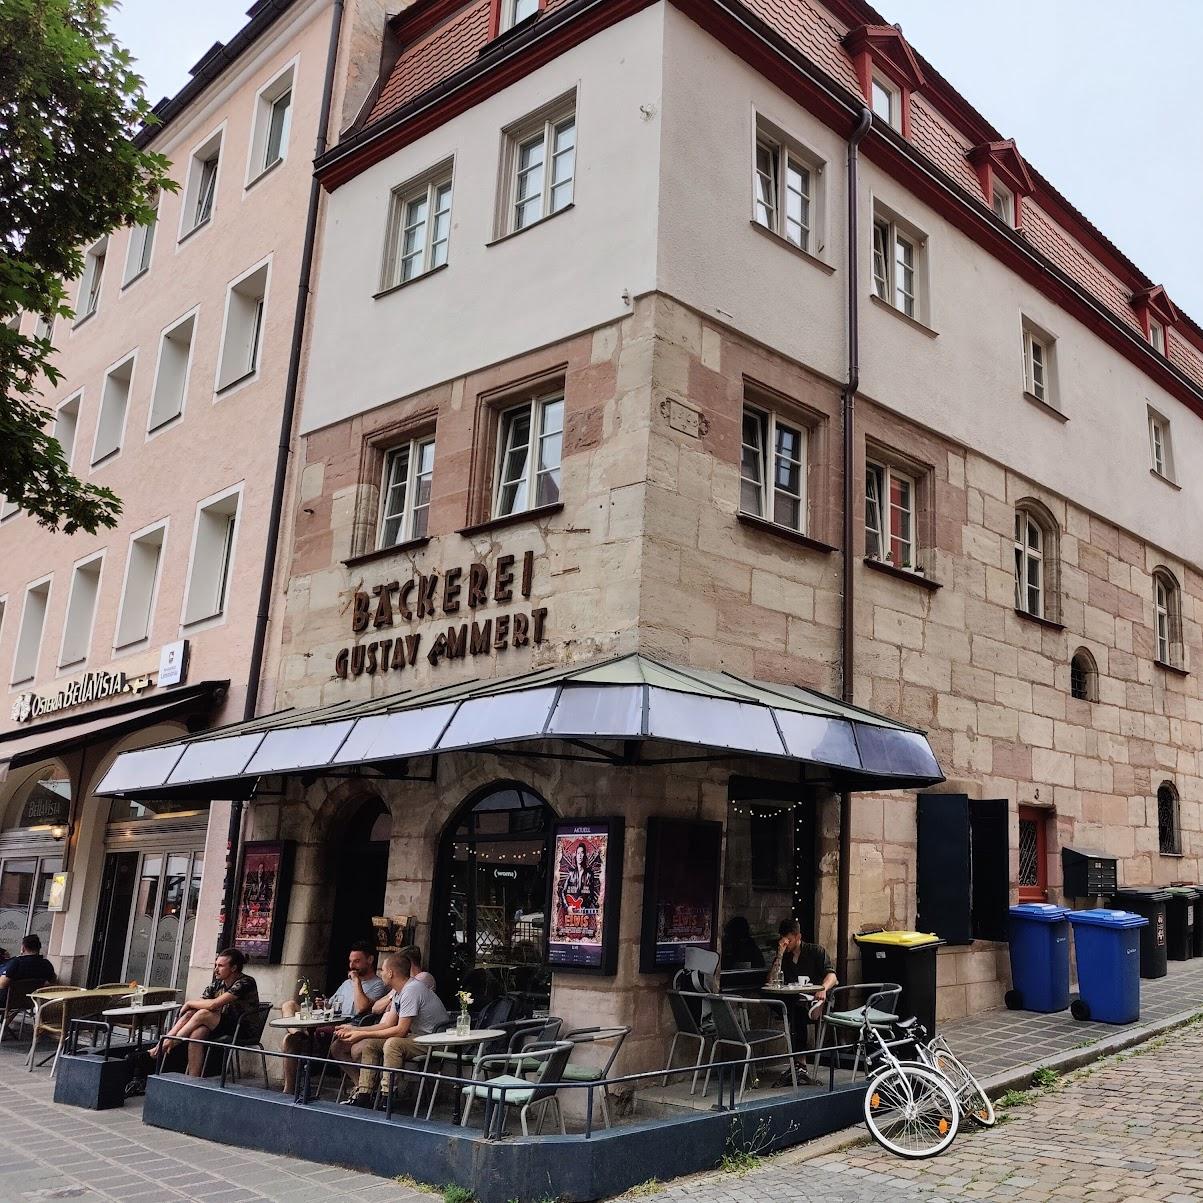 Restaurant "Meisengeige" in Nürnberg